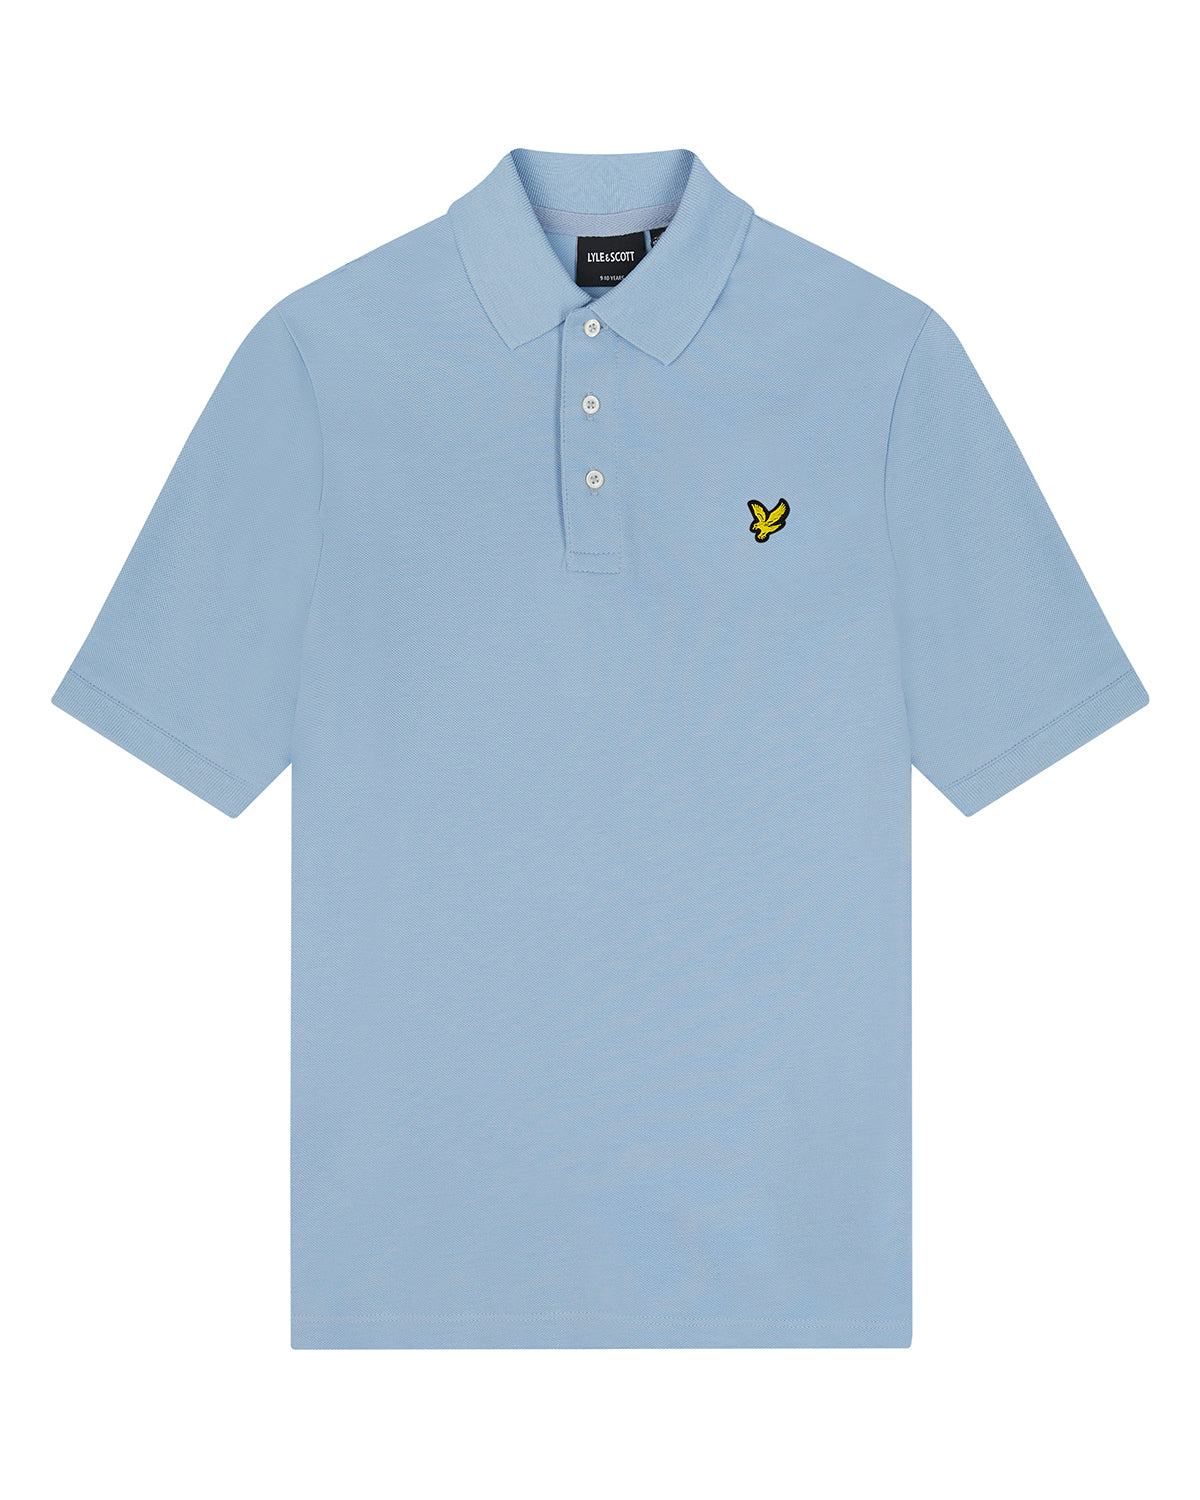 Jongens Plain Polo Shirt van Lyle & Scott in de kleur W487 Light Blue in maat 170-176.